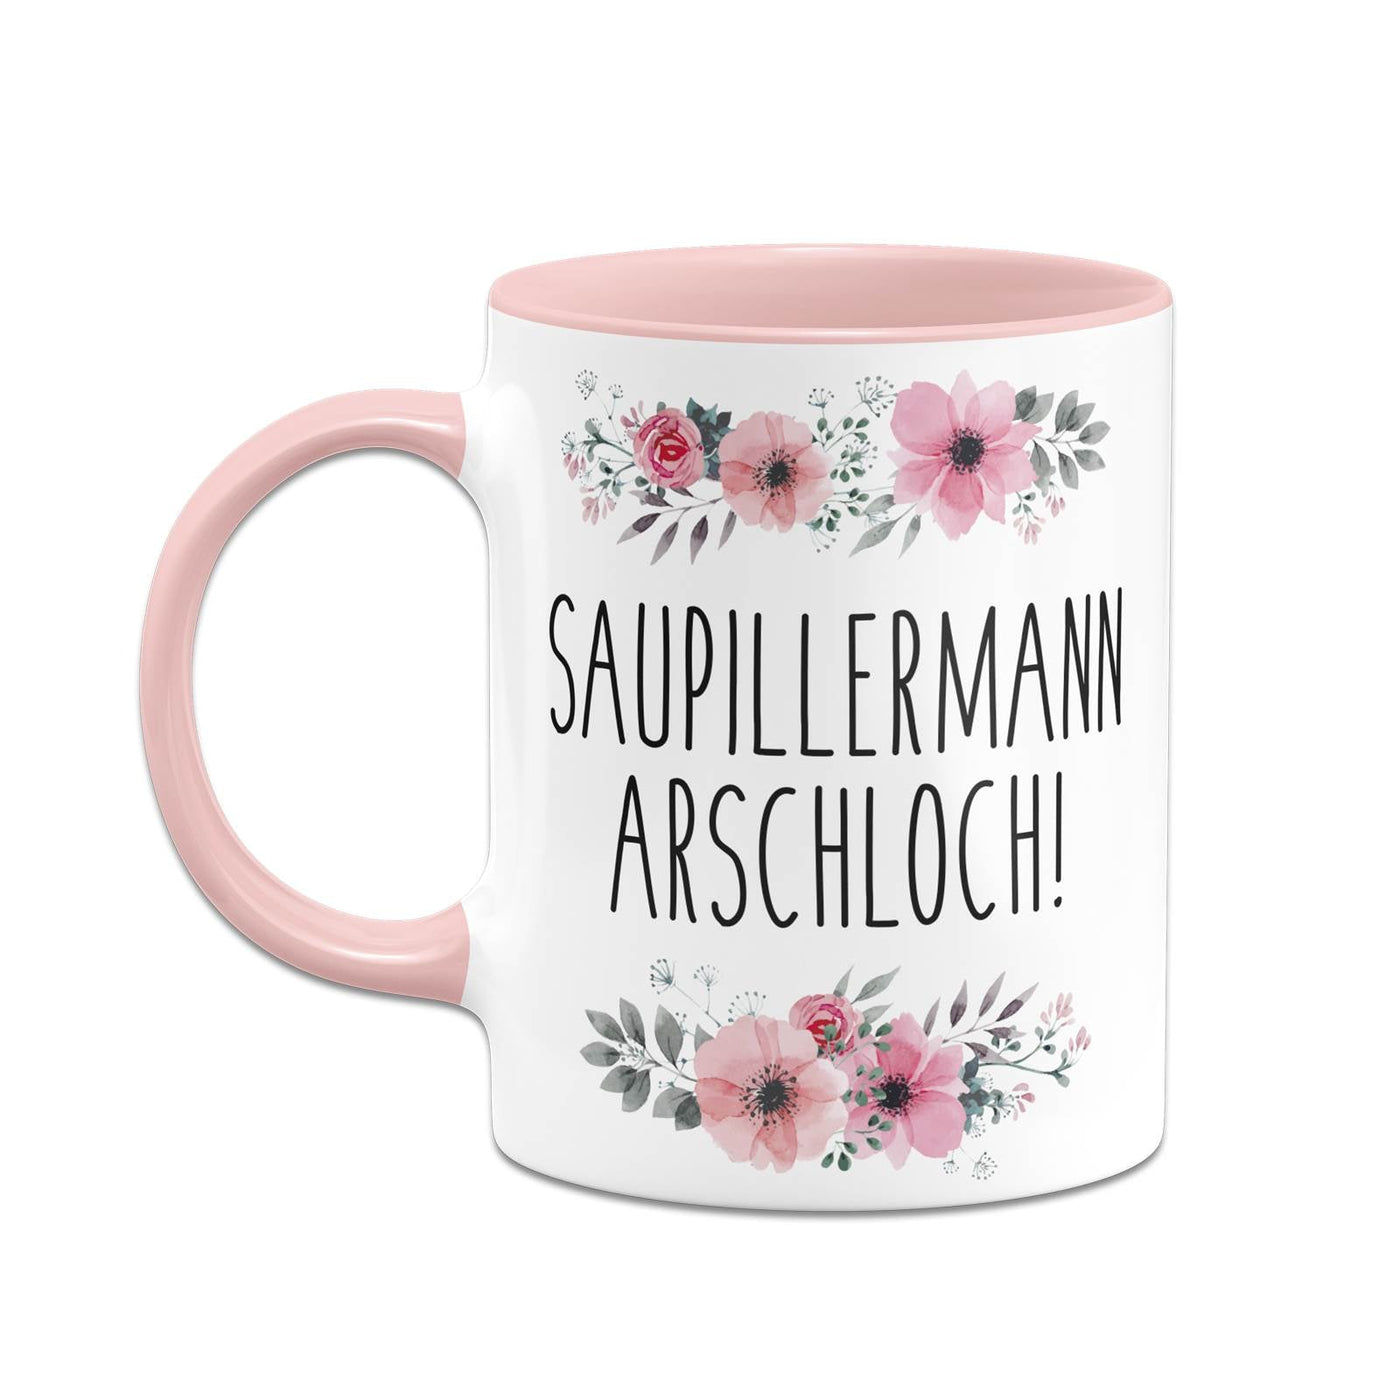 Bild: Tasse - Saupillermann Arschloch!- blumig Geschenkidee